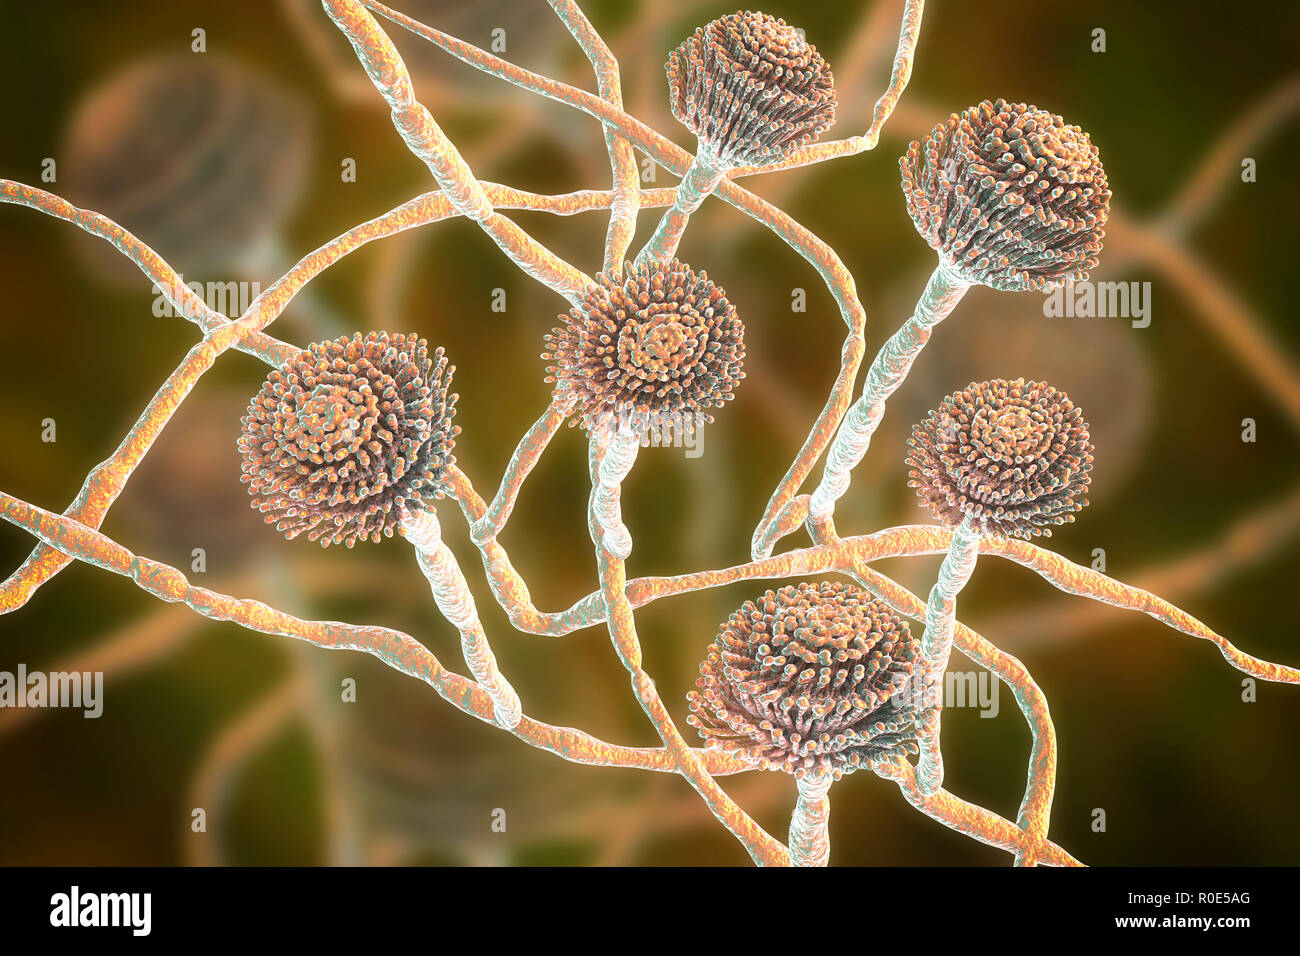 Computer Abbildung: fruchtkörper (conidiophores) und Hyphen des Pilzes Aspergillus fumigatus. A. fumigatus ist eine weit verbreitete saprophyte wächst auf Haushalt Staub, Erde, und das Verderben von pflanzlichen Stoffen, einschließlich altes Essen, Heu und Getreide. Menschen und Tiere ständig Einatmen zahlreiche Konidien des Pilzes. A. fumigatus kann eine Reihe von Erkrankungen bei Menschen mit einem geschwächten Immunsystem oder anderen Lungenerkrankungen, einschließlich Allergie und die schwere Lungenkrankheit Aspergillose verursachen. Dieser Pilz kann auch auf das Gehirn, Nieren, Leber und Haut verteilen. Stockfoto